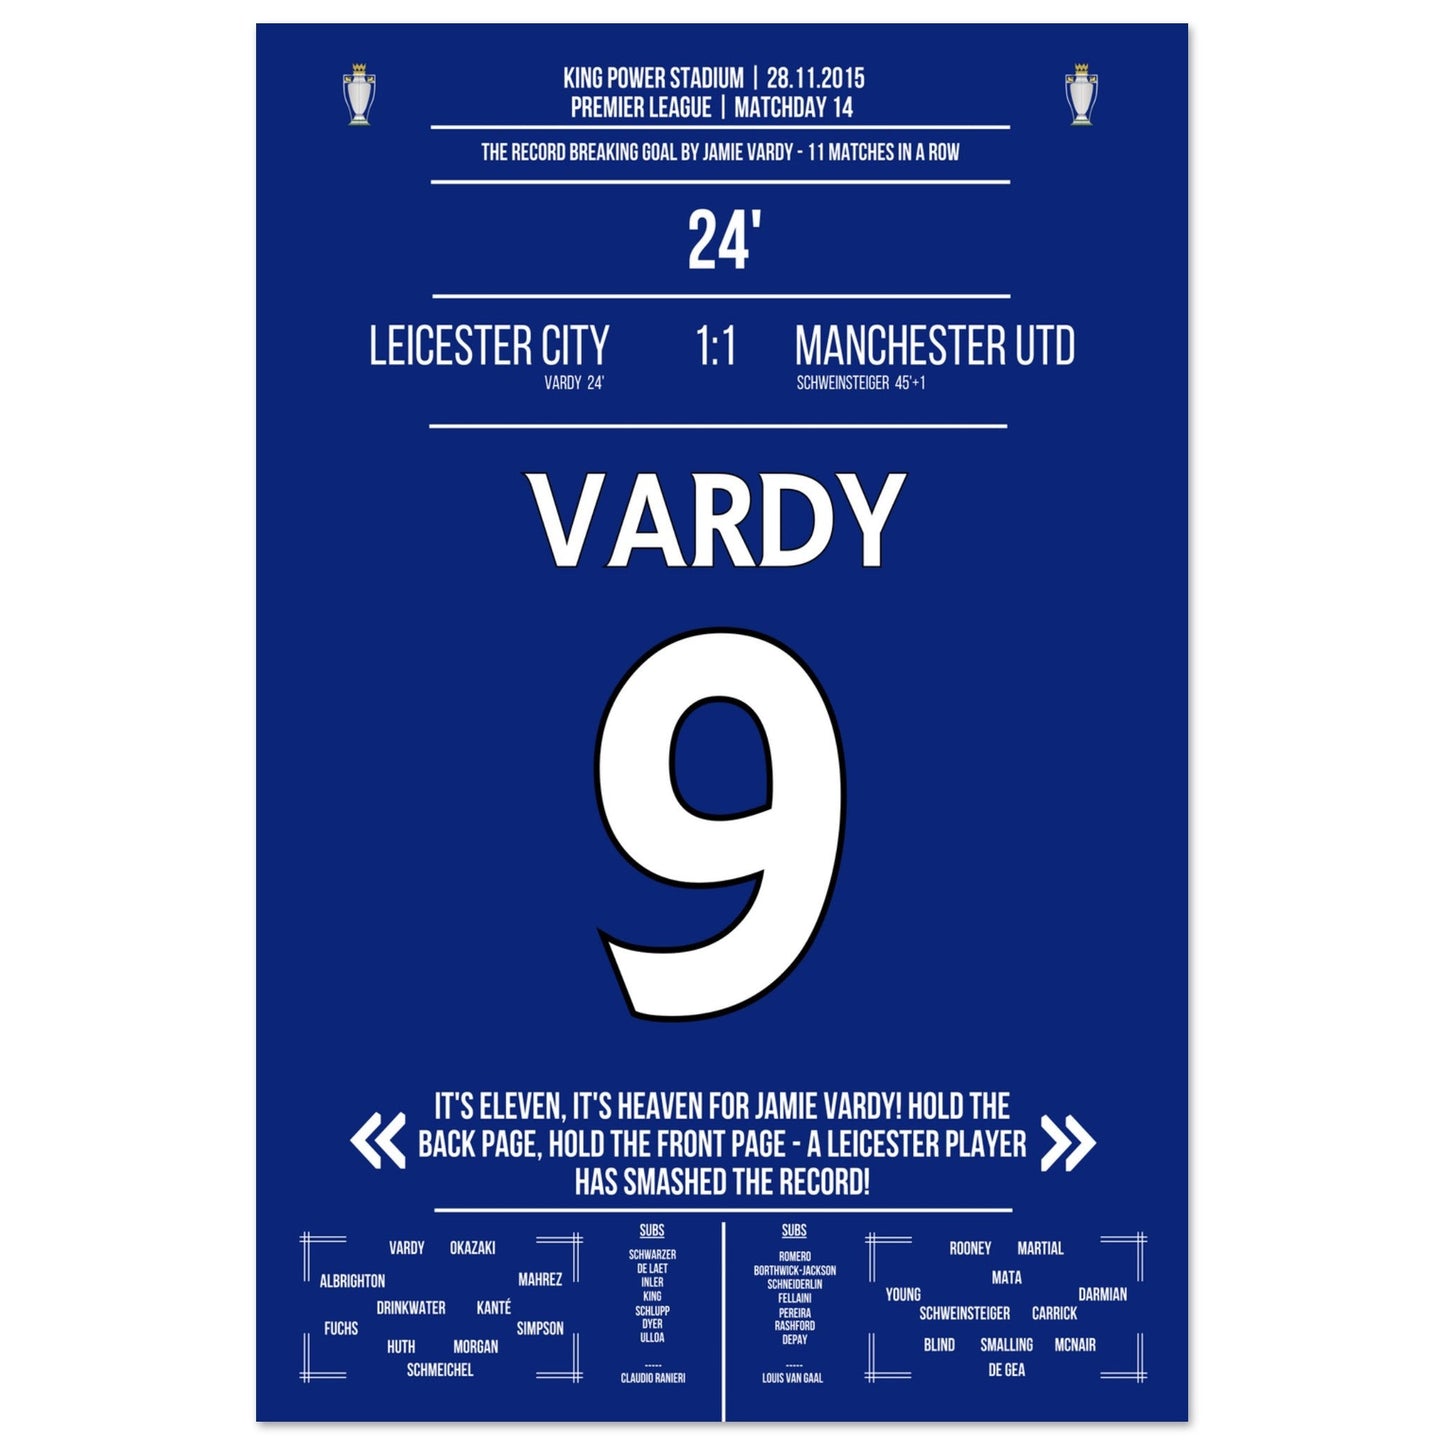 Vardy trifft im 11. Spiel in Folge und bricht den Premier League Rekord